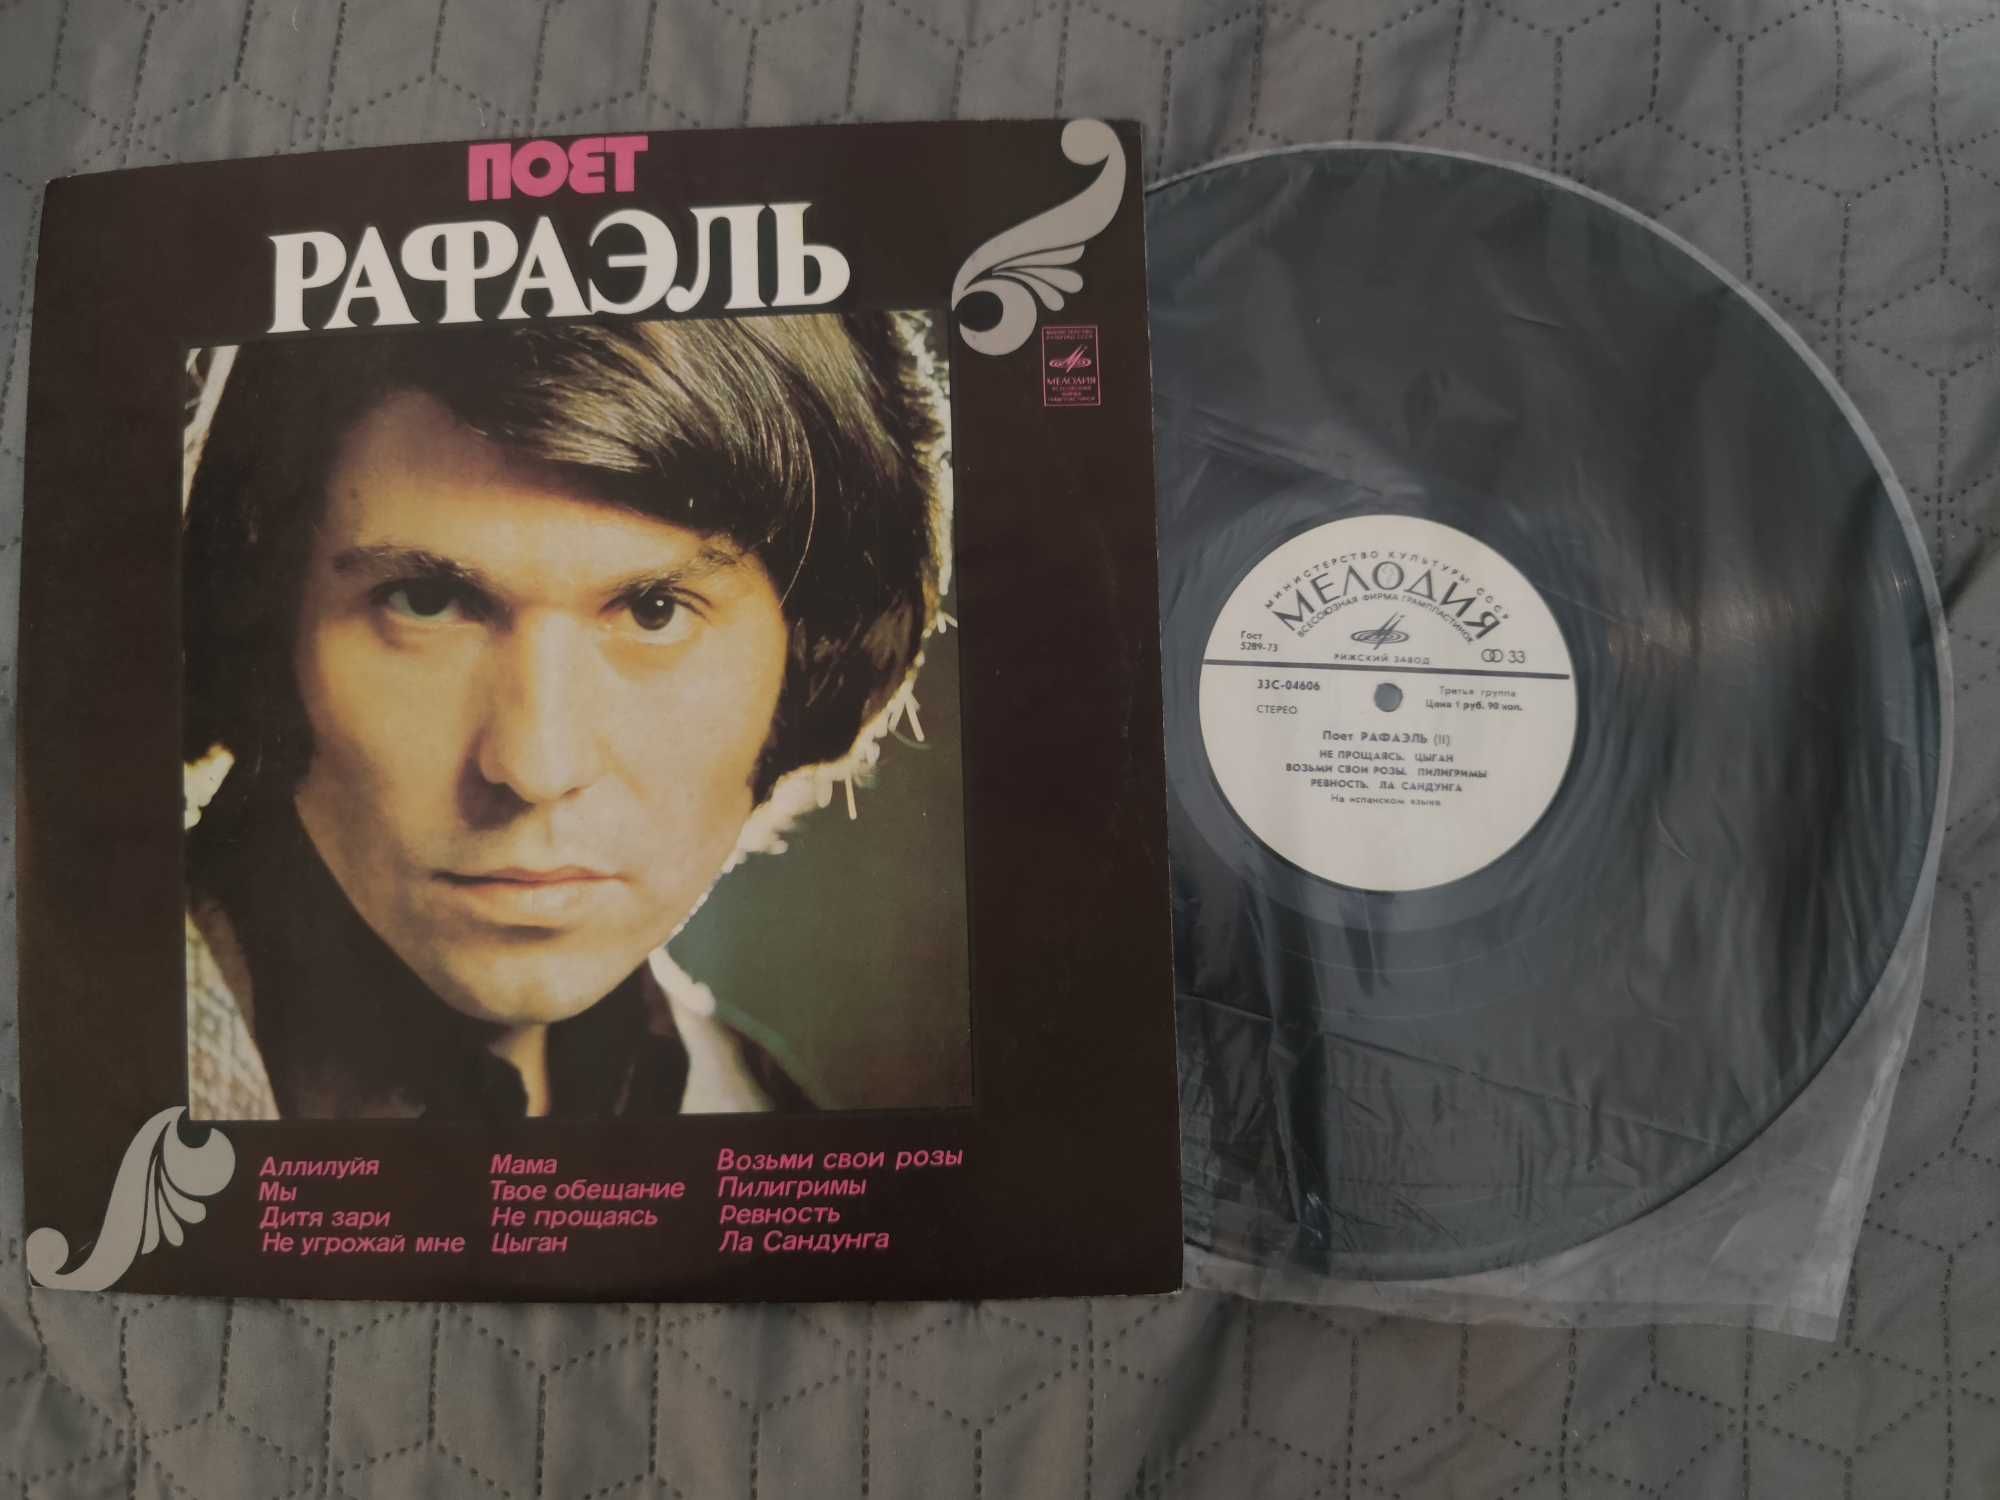 Raphael. LP. Melodia. VG++. Riga.